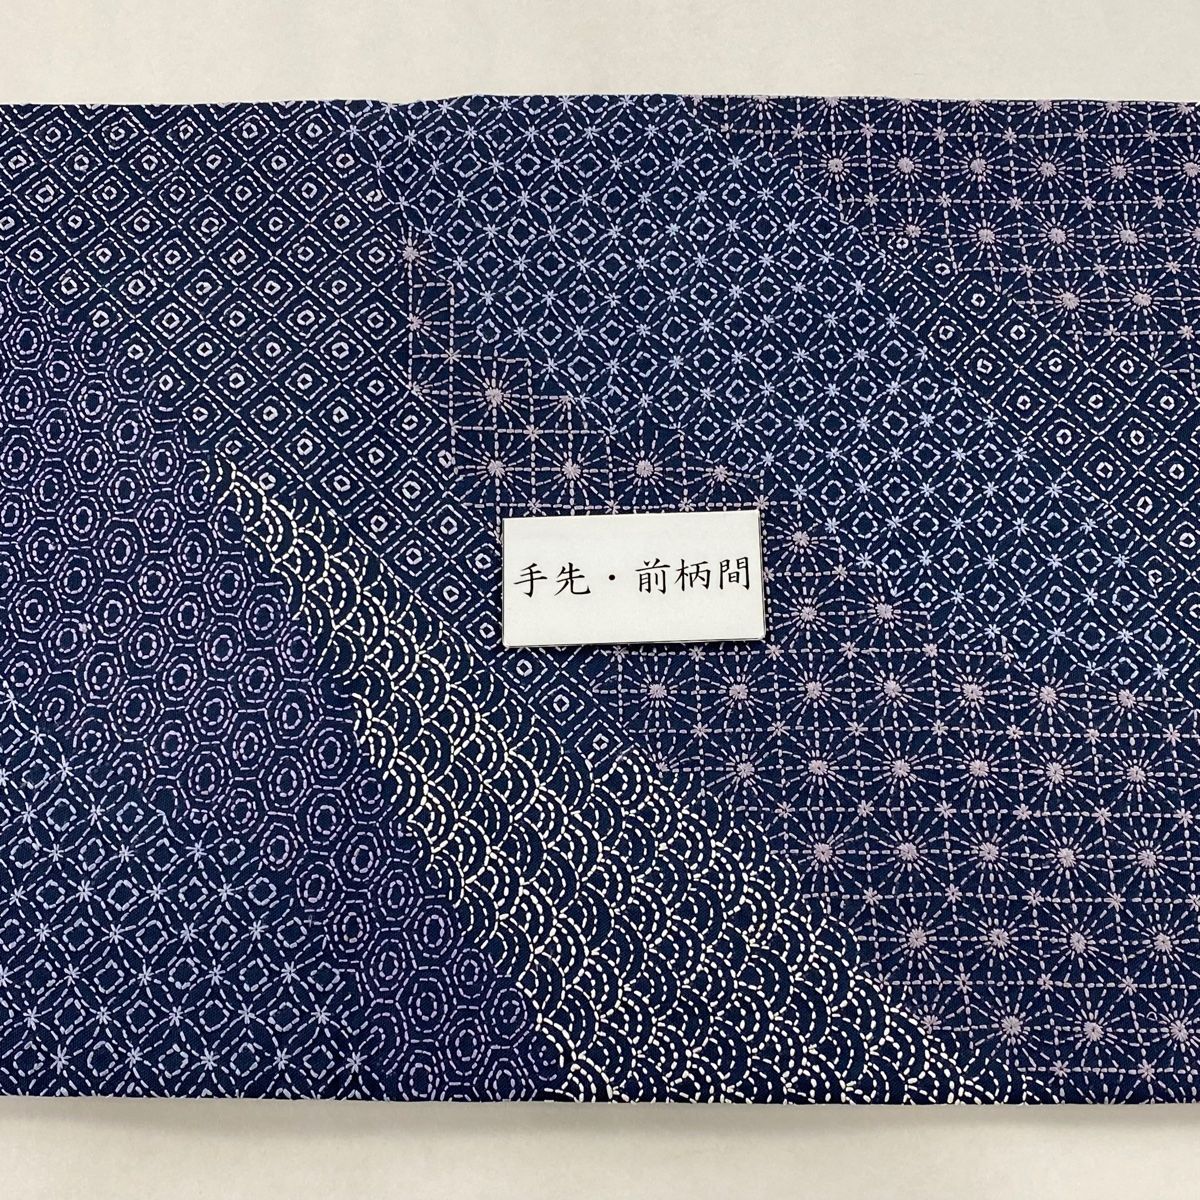 袋帯 逸品 有職文様 刺繍 青紫 全通 正絹 【中古】 - バイセル